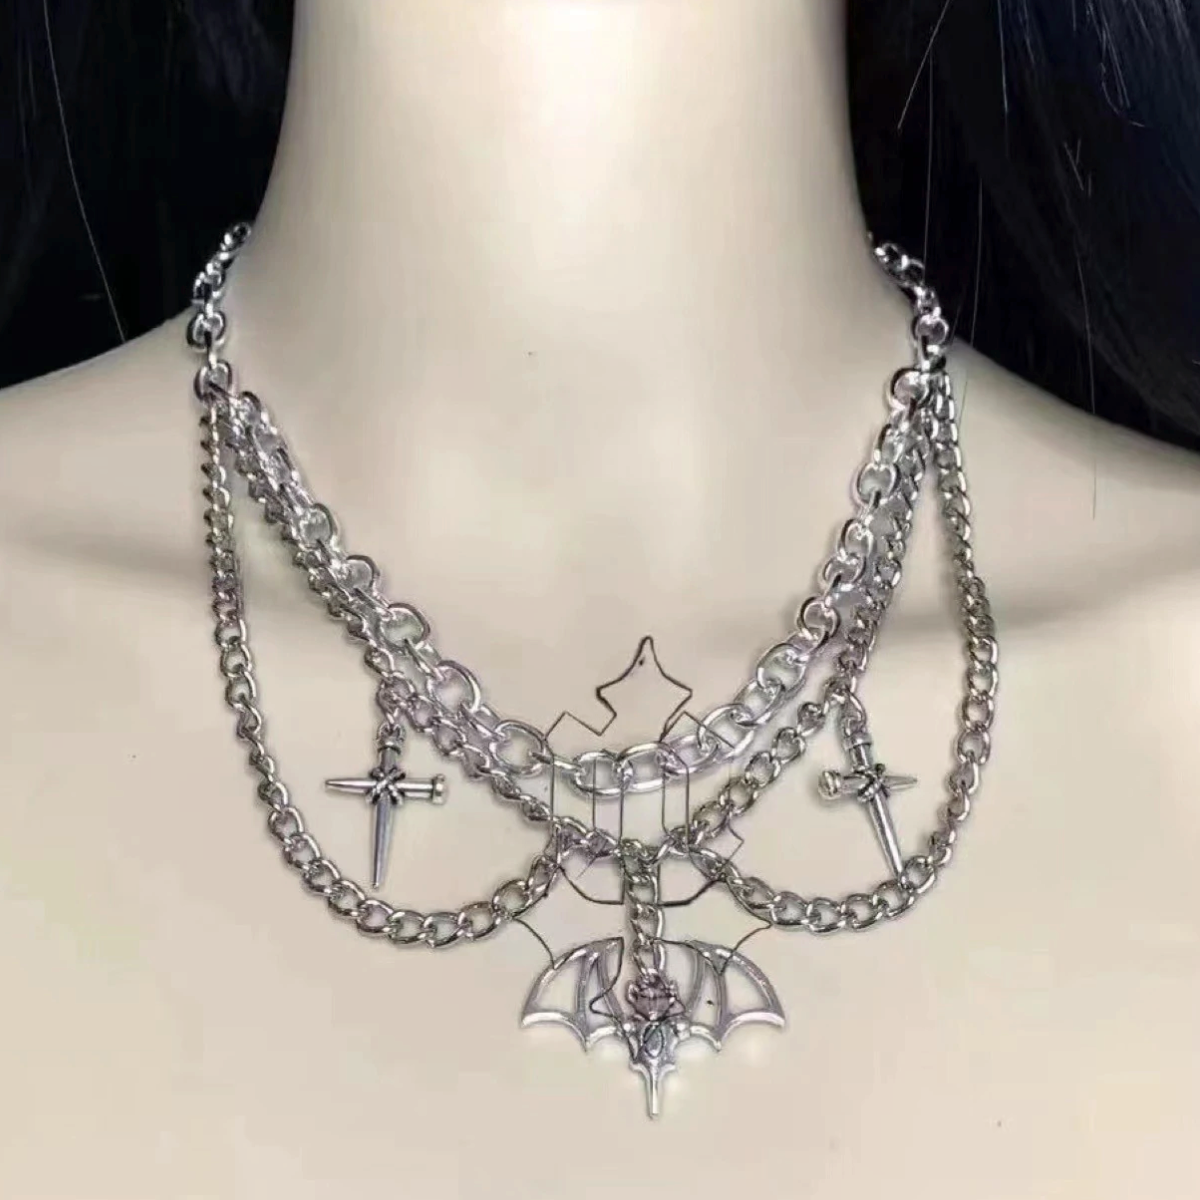 2dadoll asphyxia necklace